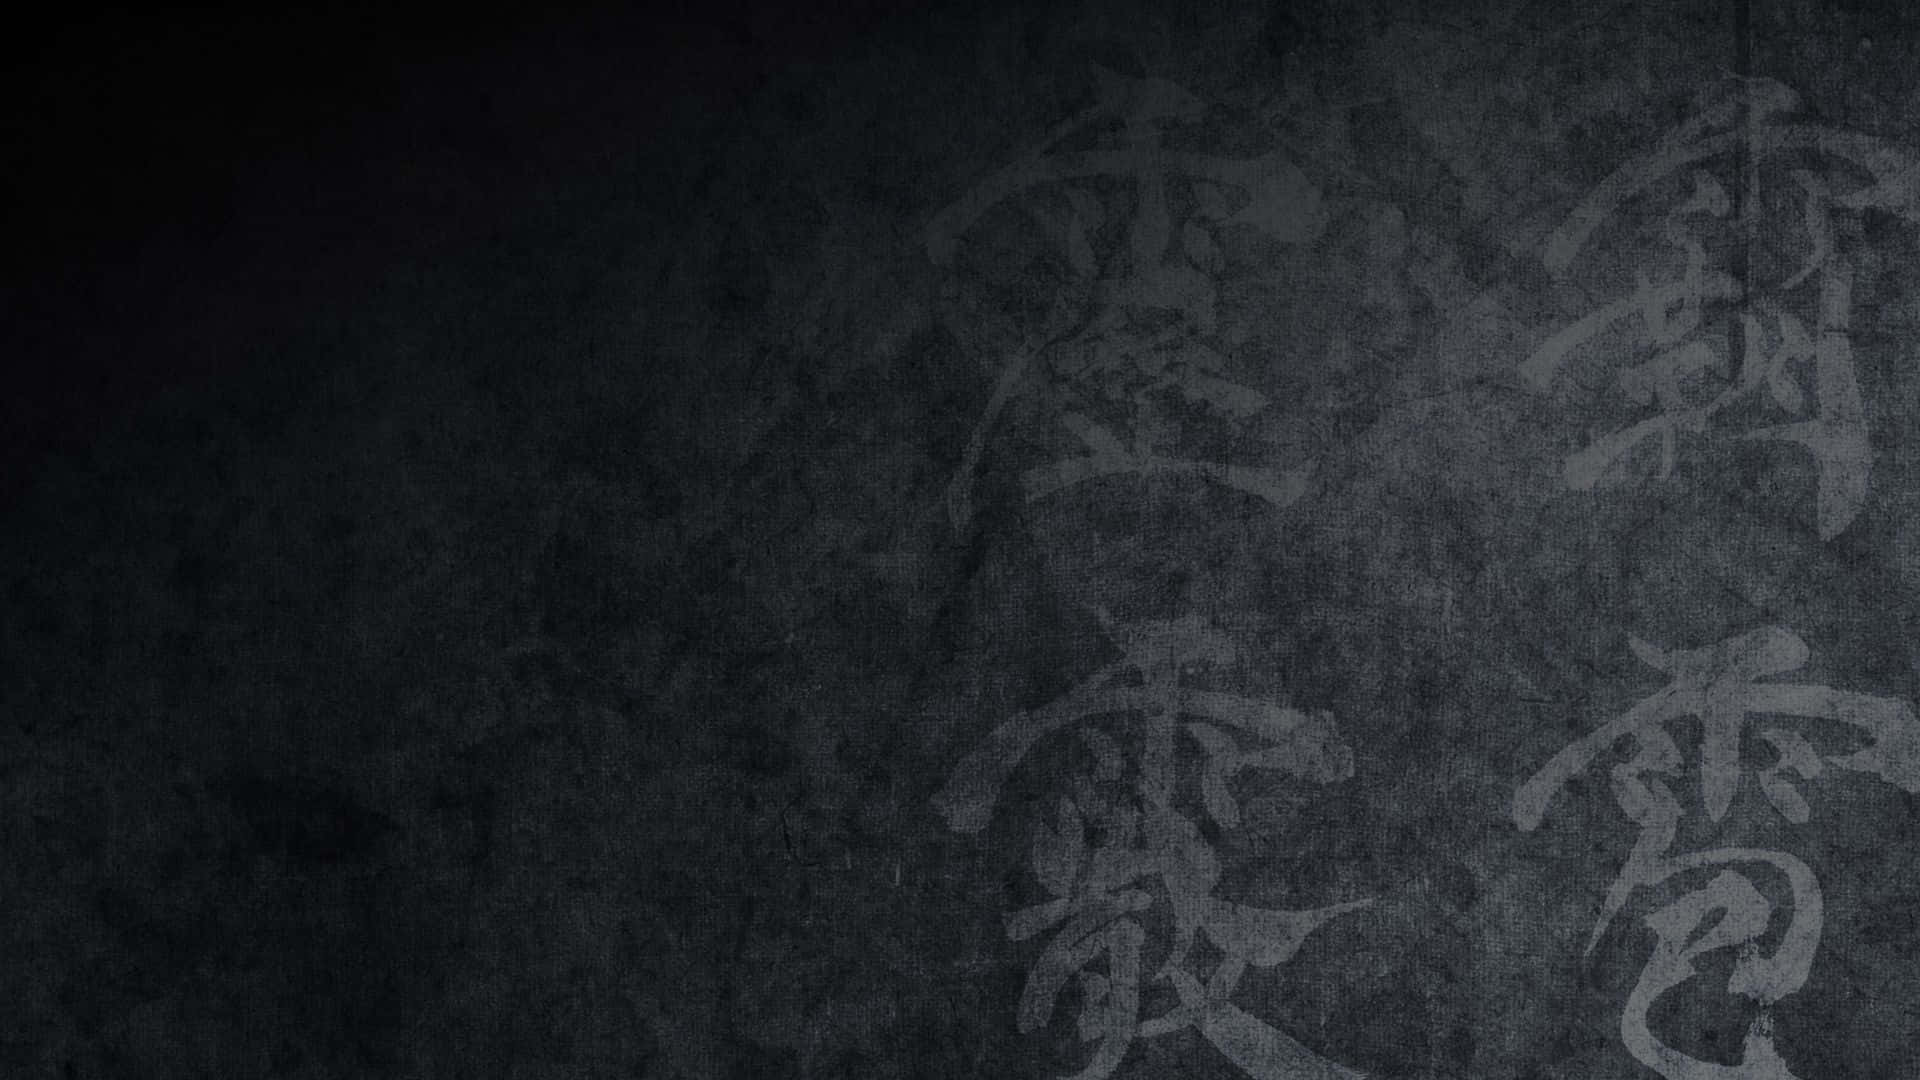 Etsort-hvidt Billede Af Kinesisk Kalligrafi.